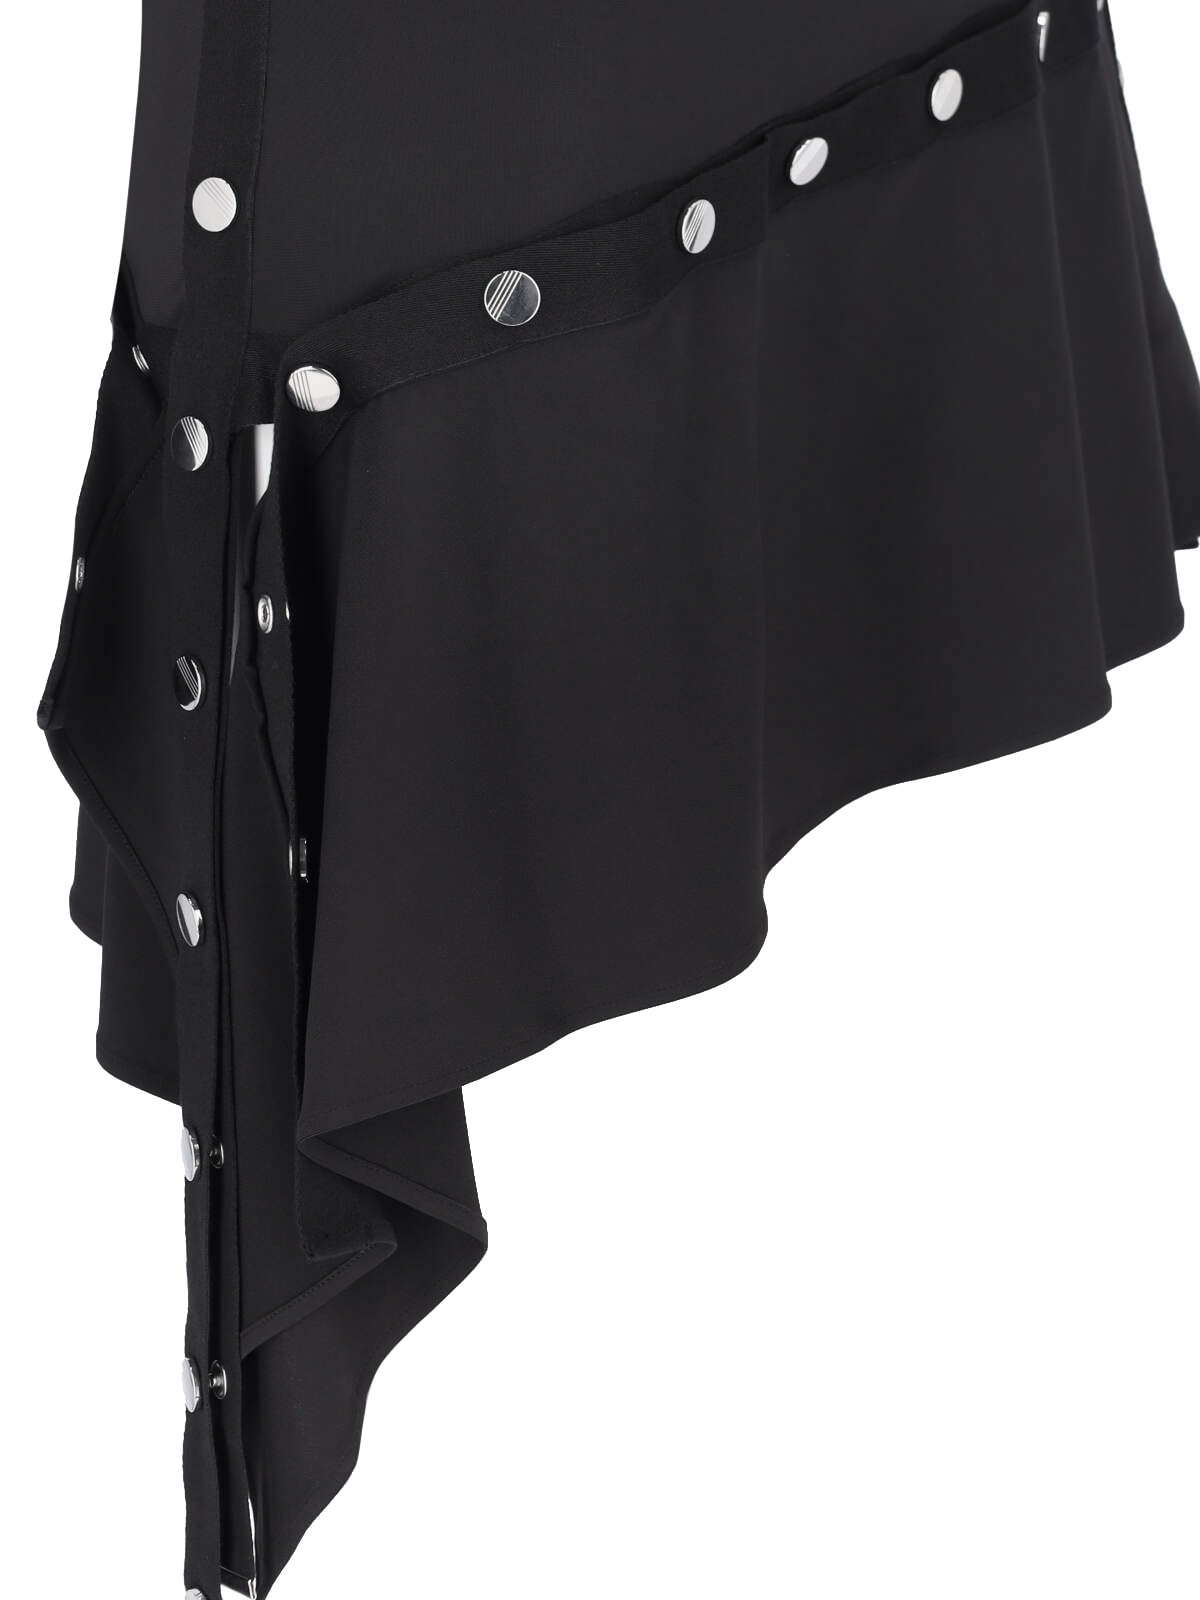 Shop Attico Black Mini Dress